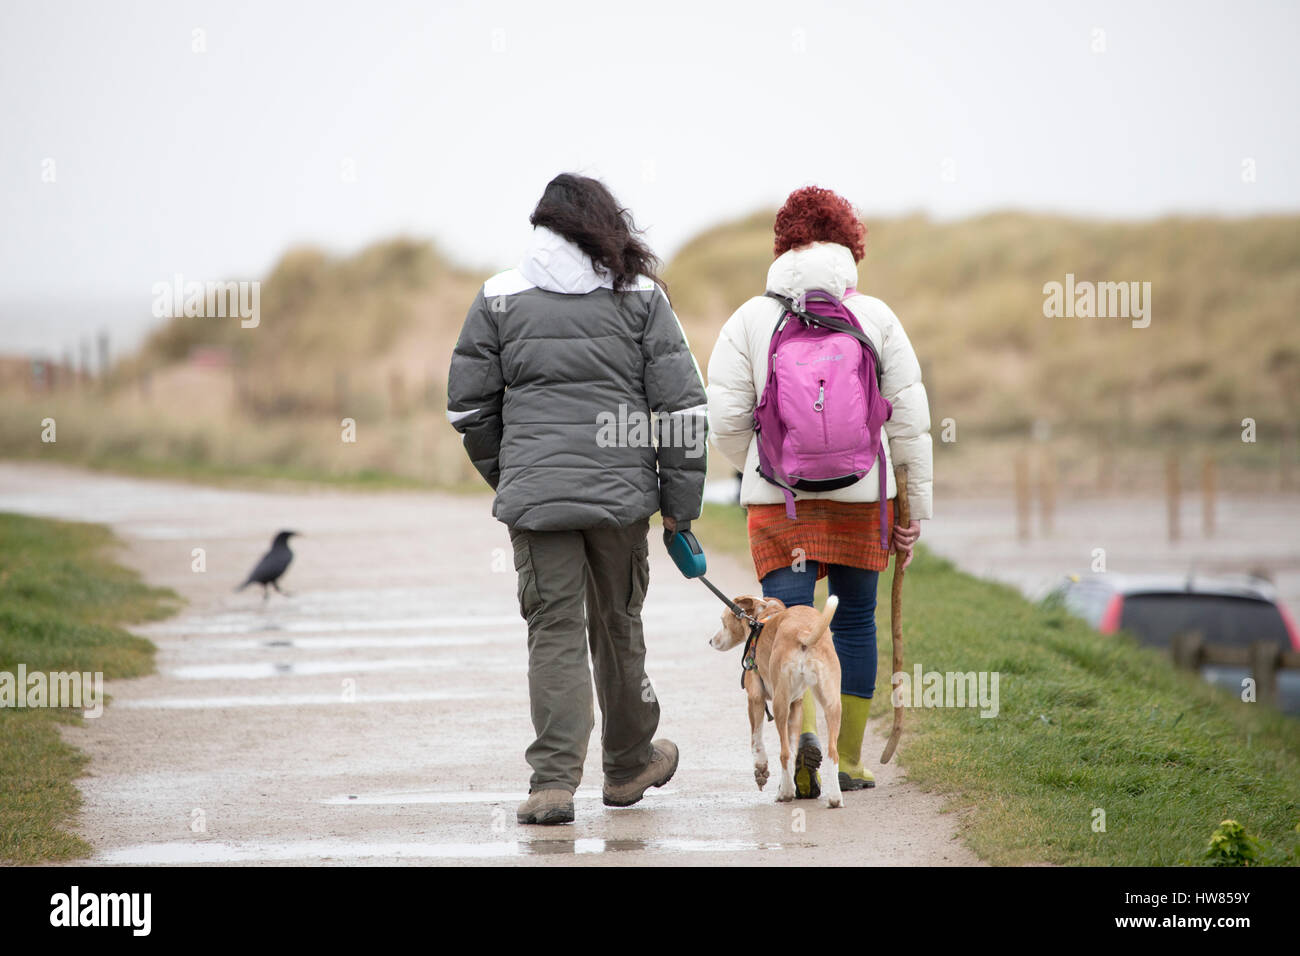 Conditions humide et venteux avec deux femmes dog walkers à marcher vers la plage de talacre avec leur chien en laisse, Flinthsire, Pays de Galles, Royaume-Uni Banque D'Images